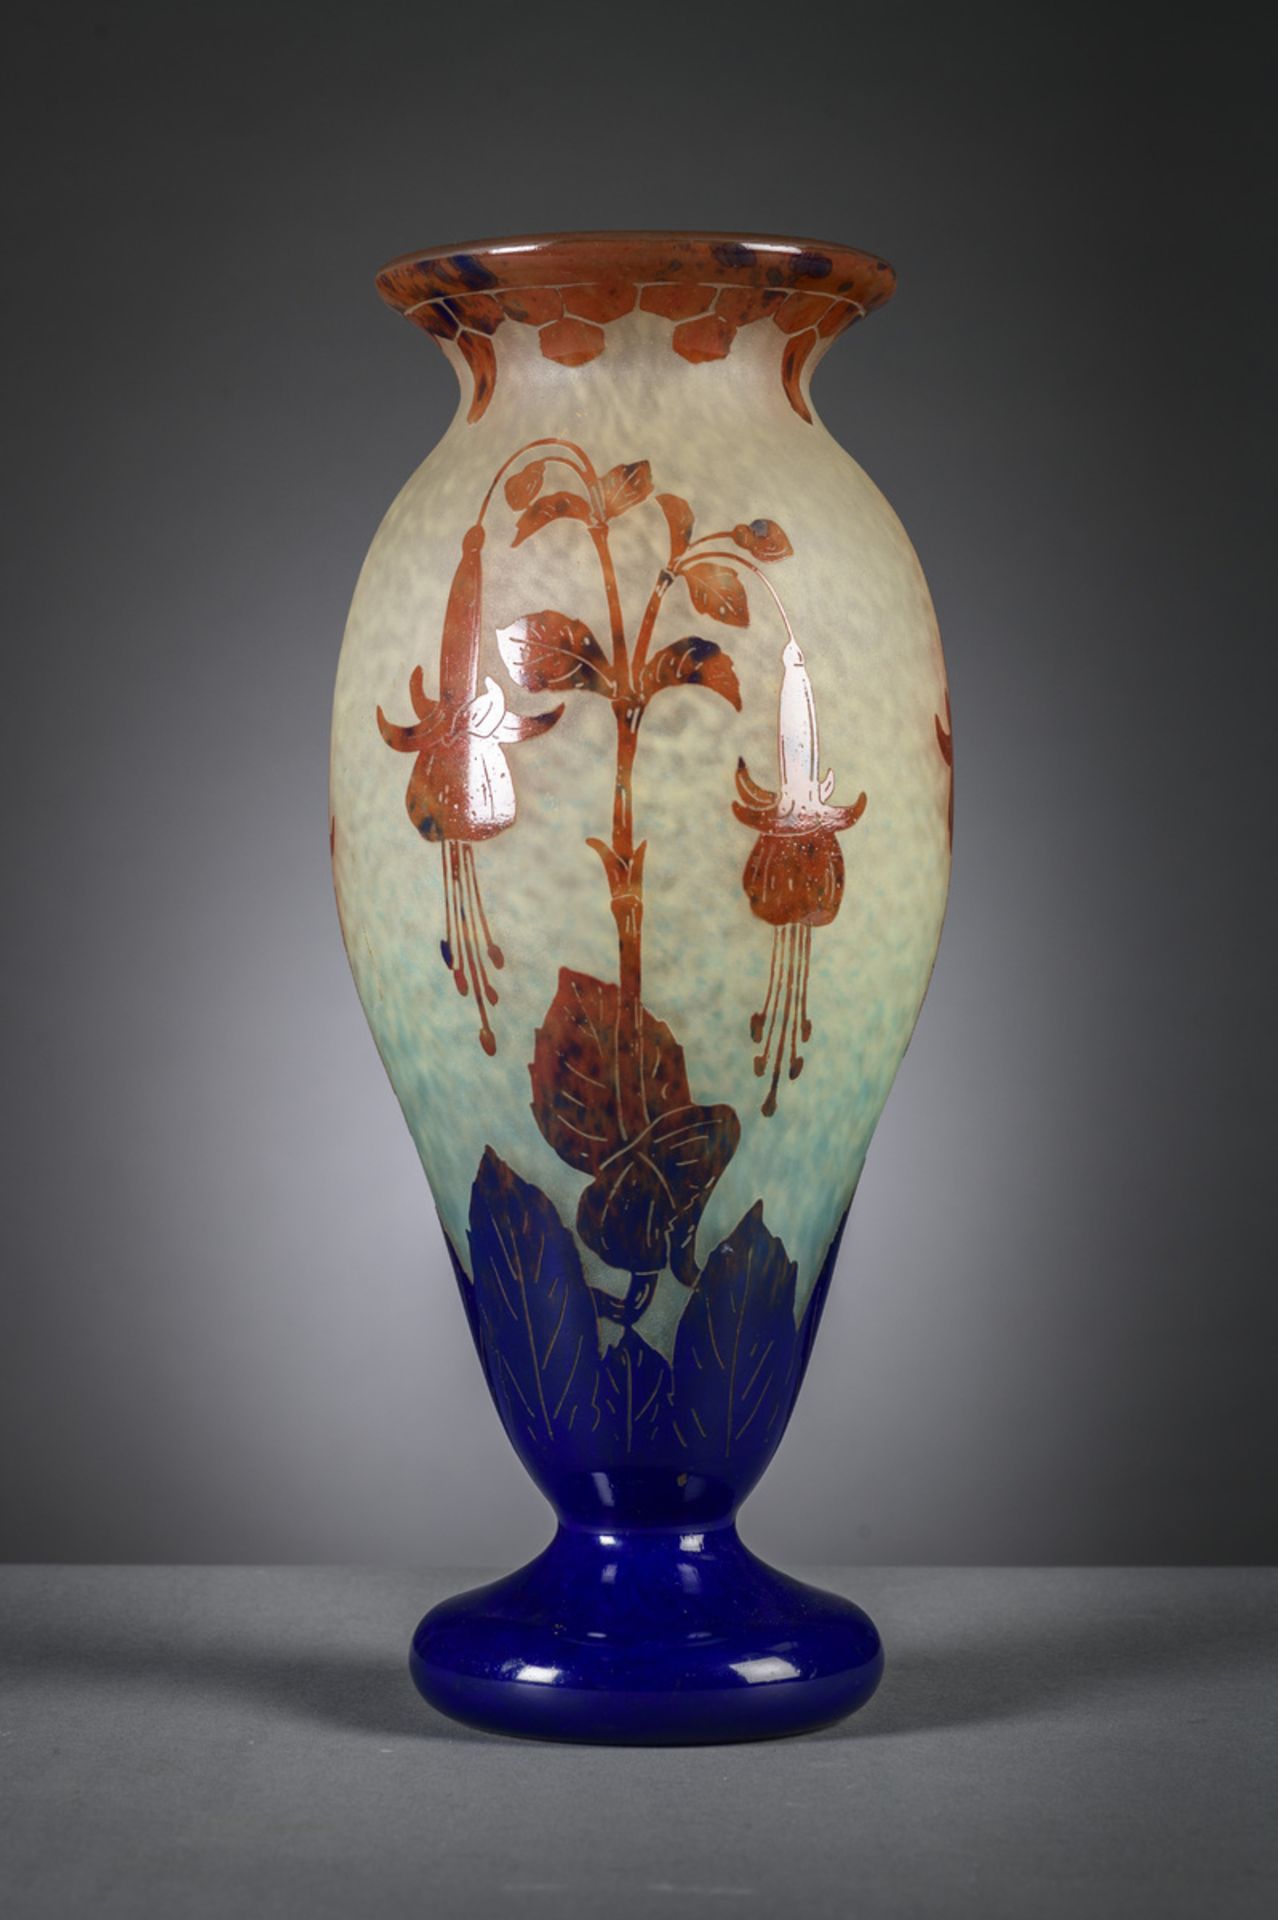 Large glass vase 'le verre Francais' with floral decoration (h45cm)